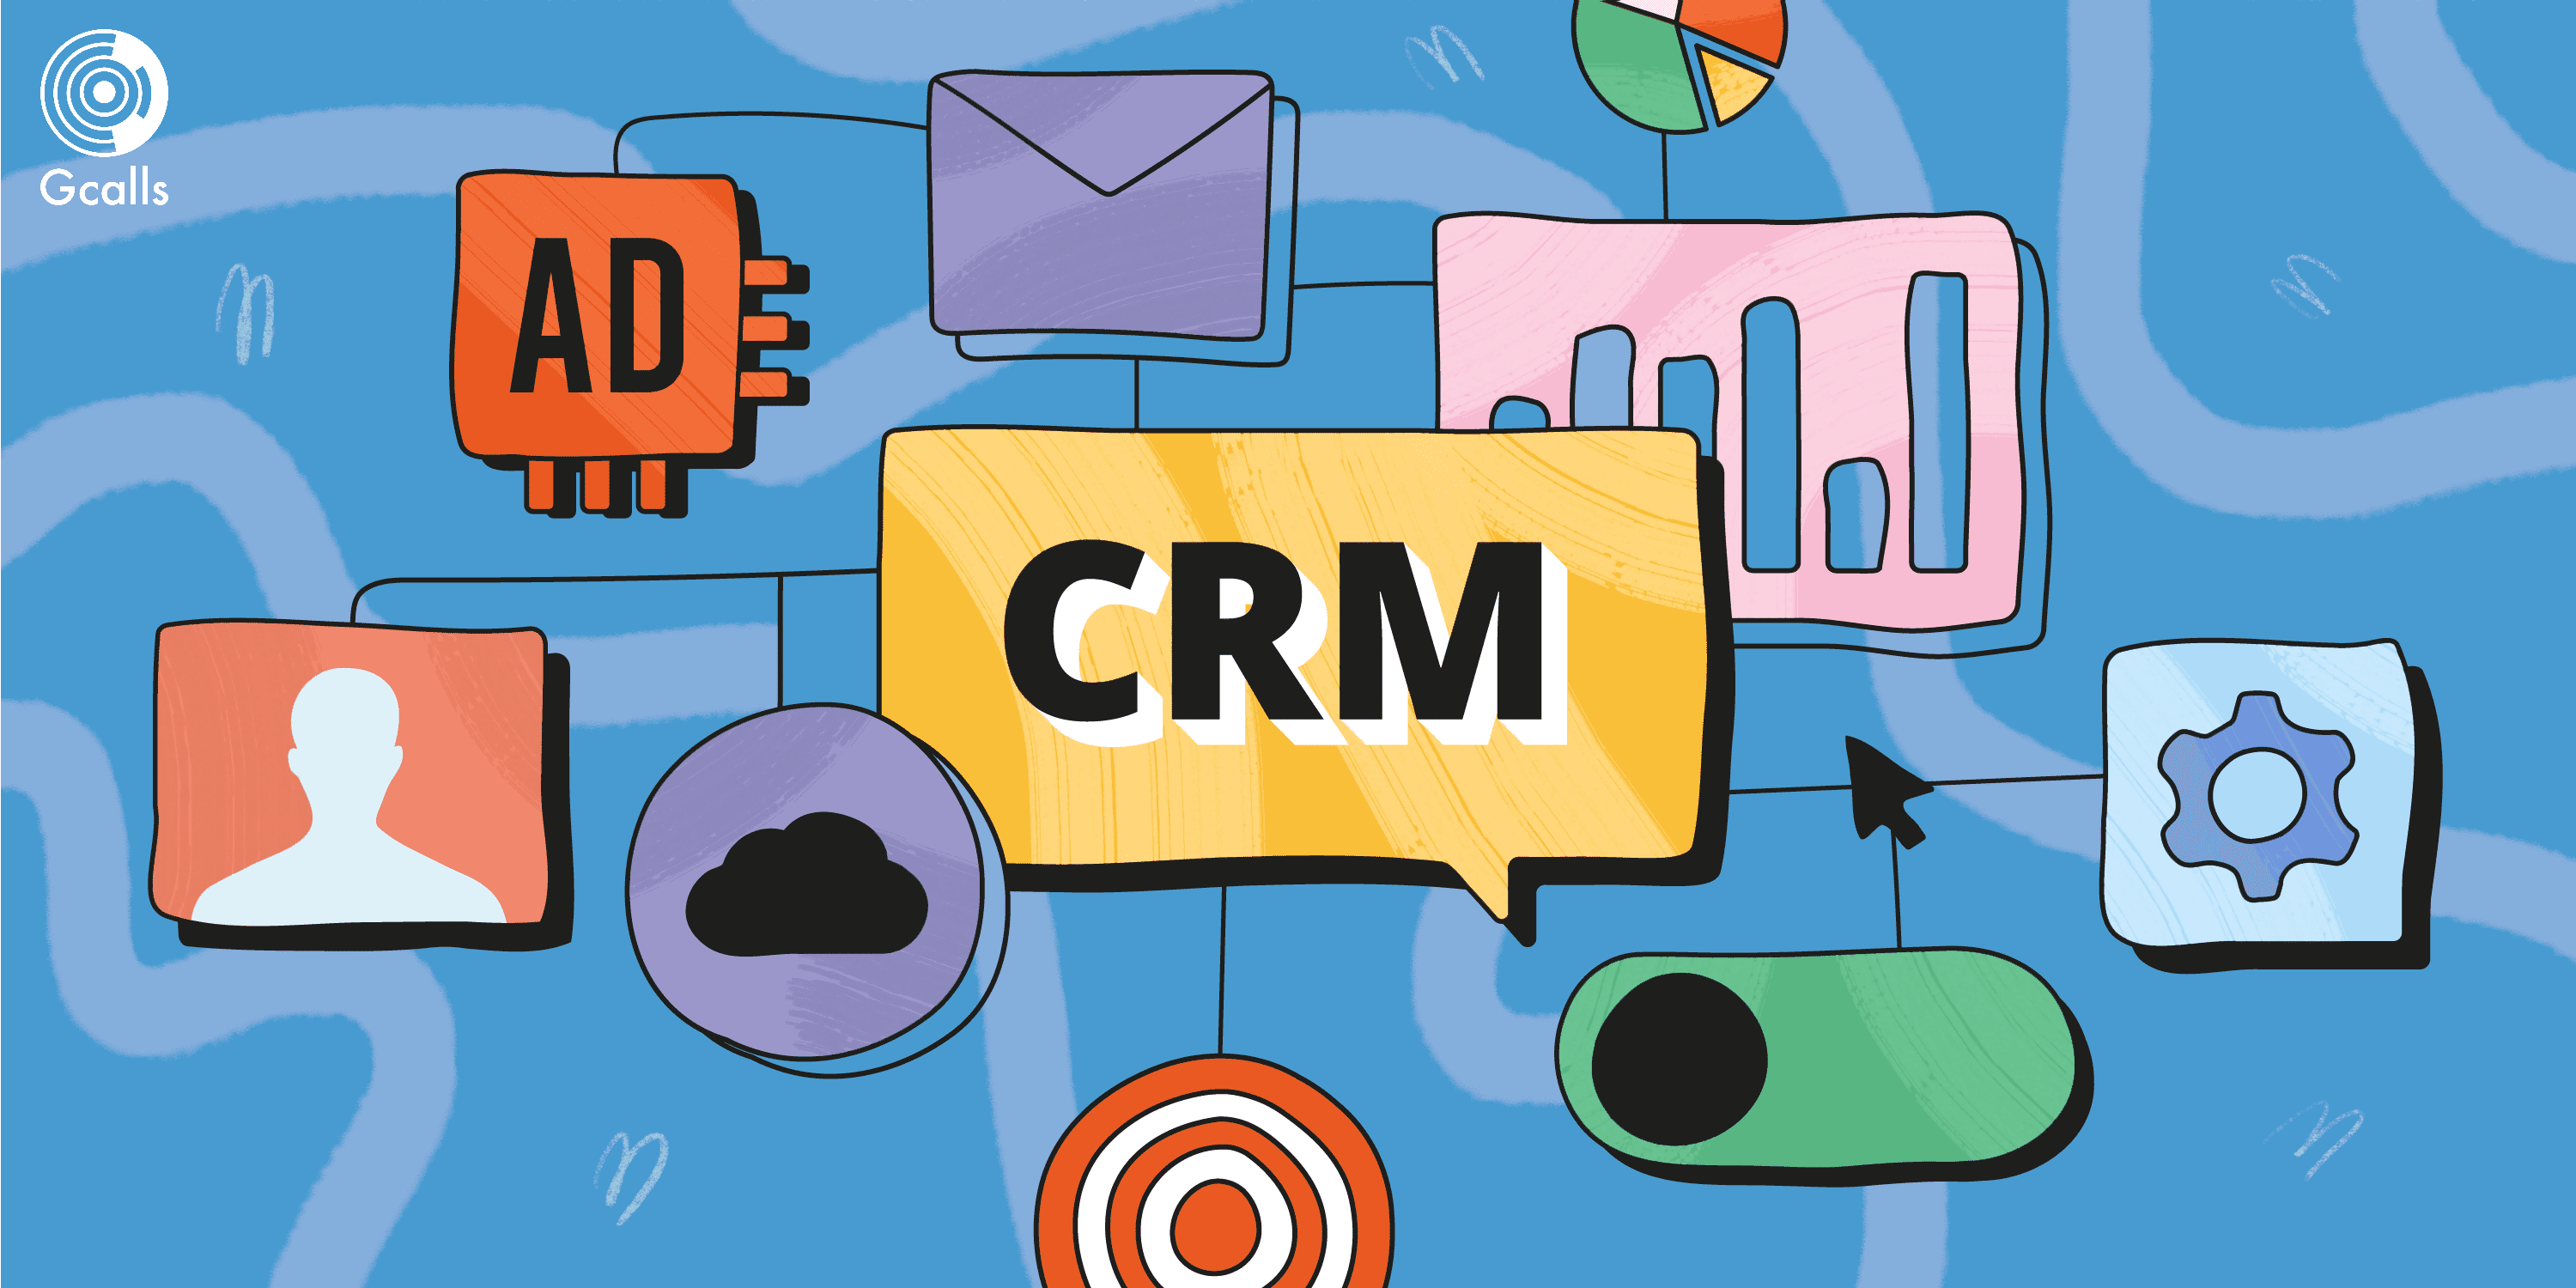 Reviews of salesforce CRM giúp đại diện công ty có thể đăng nhập vào danh bạ khách hàng khi đang nói chuyện điện thoại